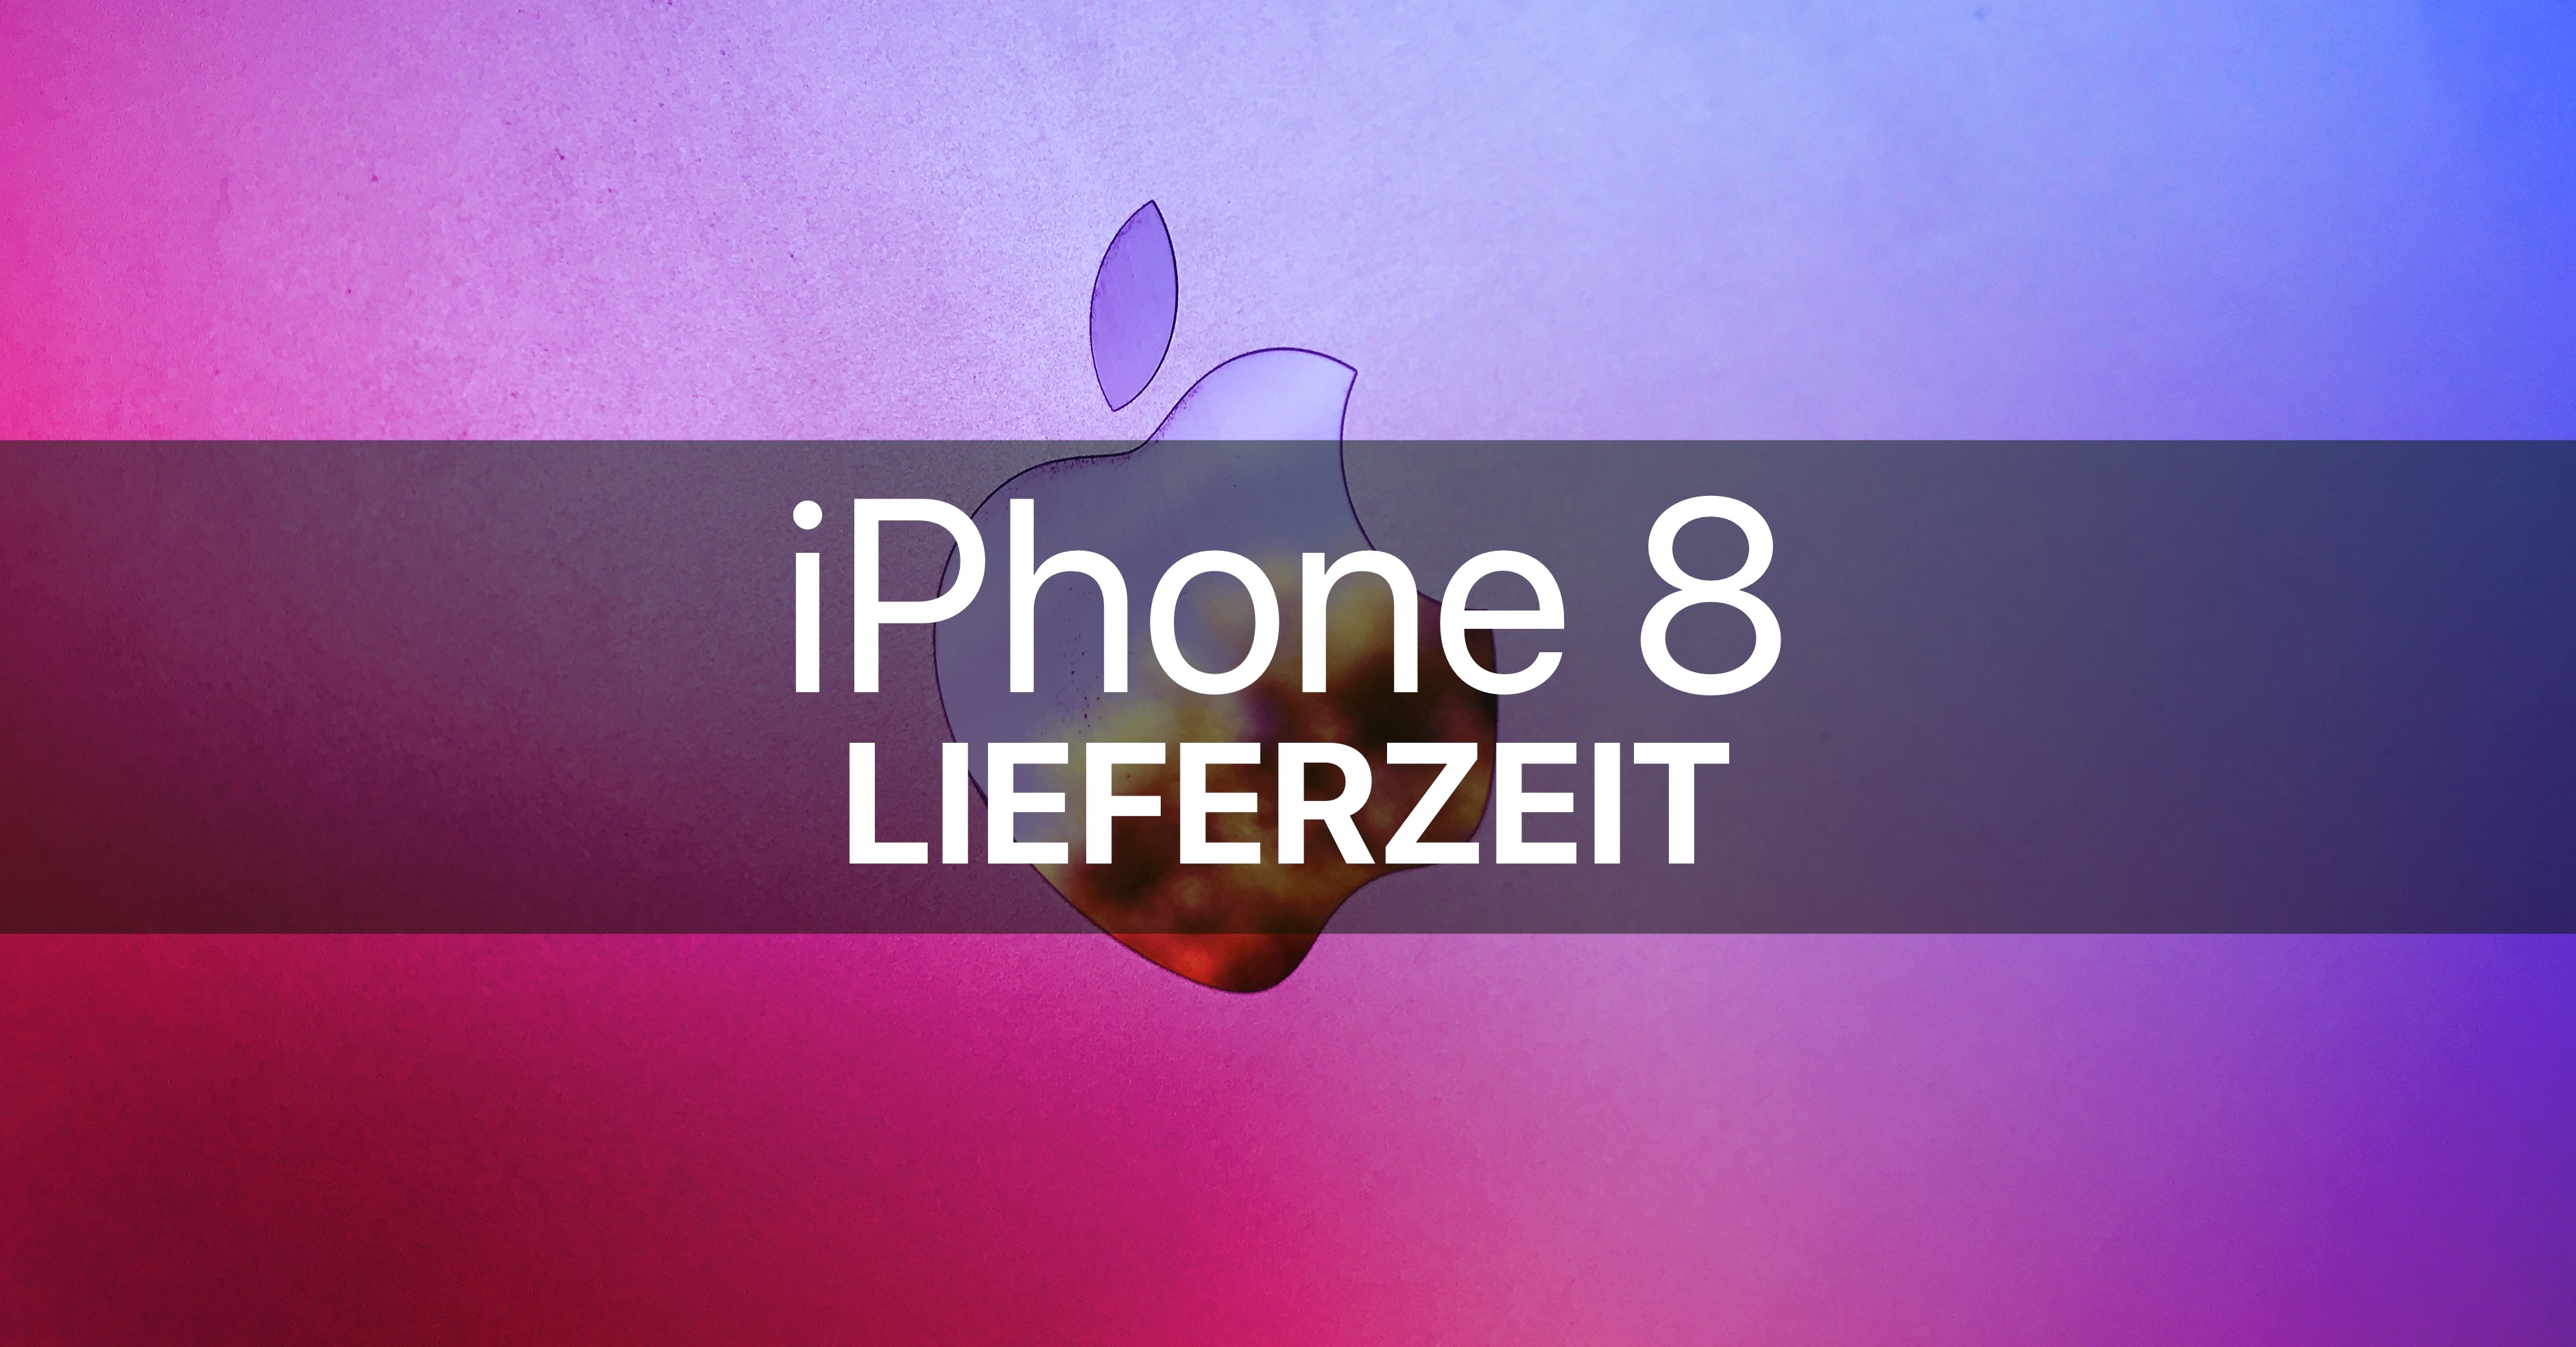 iPhone 8 Lieferzeit Lieferstatus Verfügbarkeit: Wann wird iPhone 8 geliefert? 1